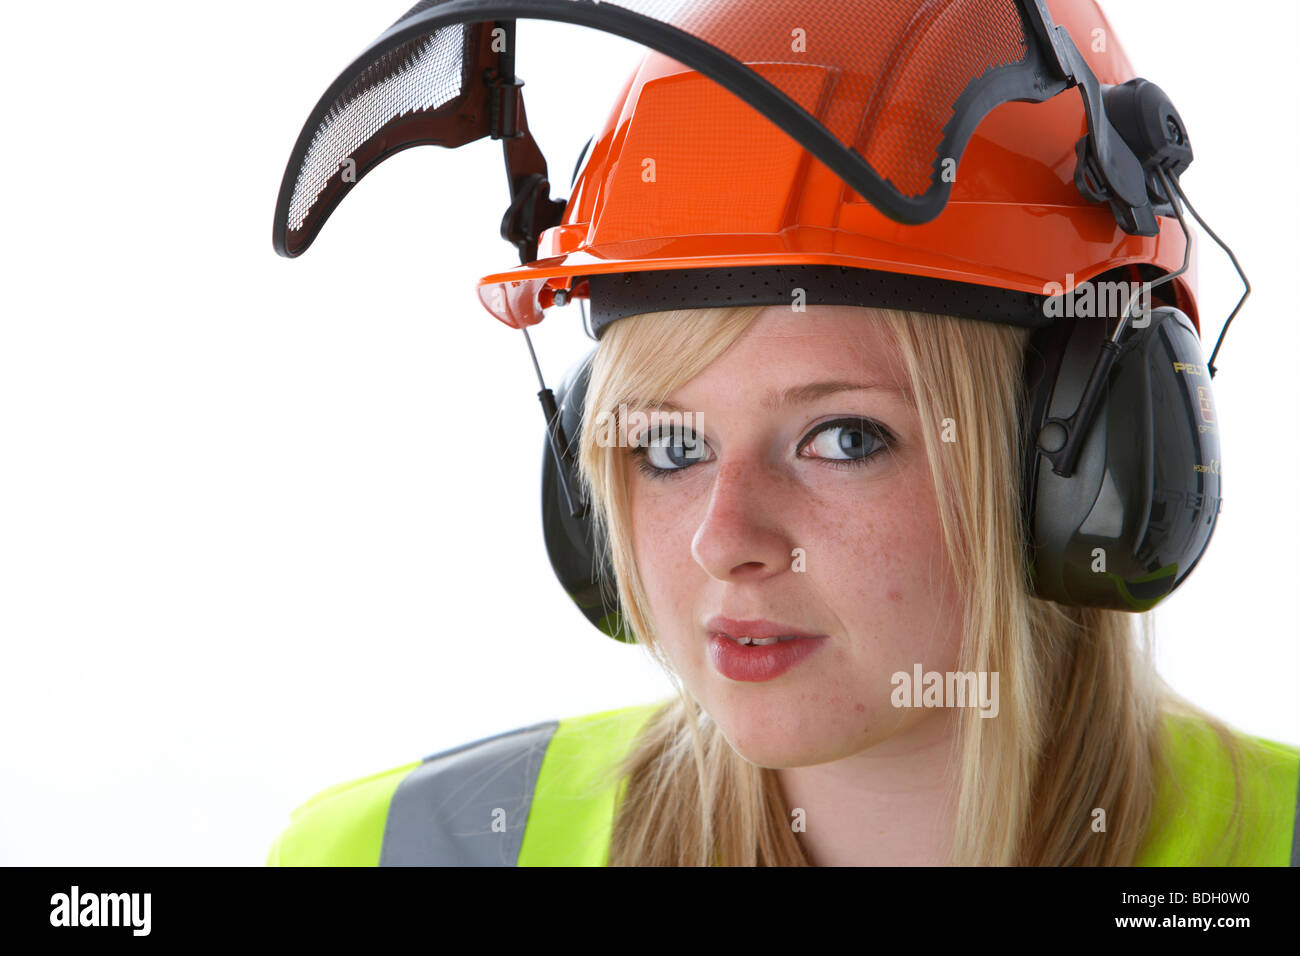 Les jeunes 20 ans blond woman wearing hard hat orange visière protège-oreilles et des vis vest contact visuel Banque D'Images